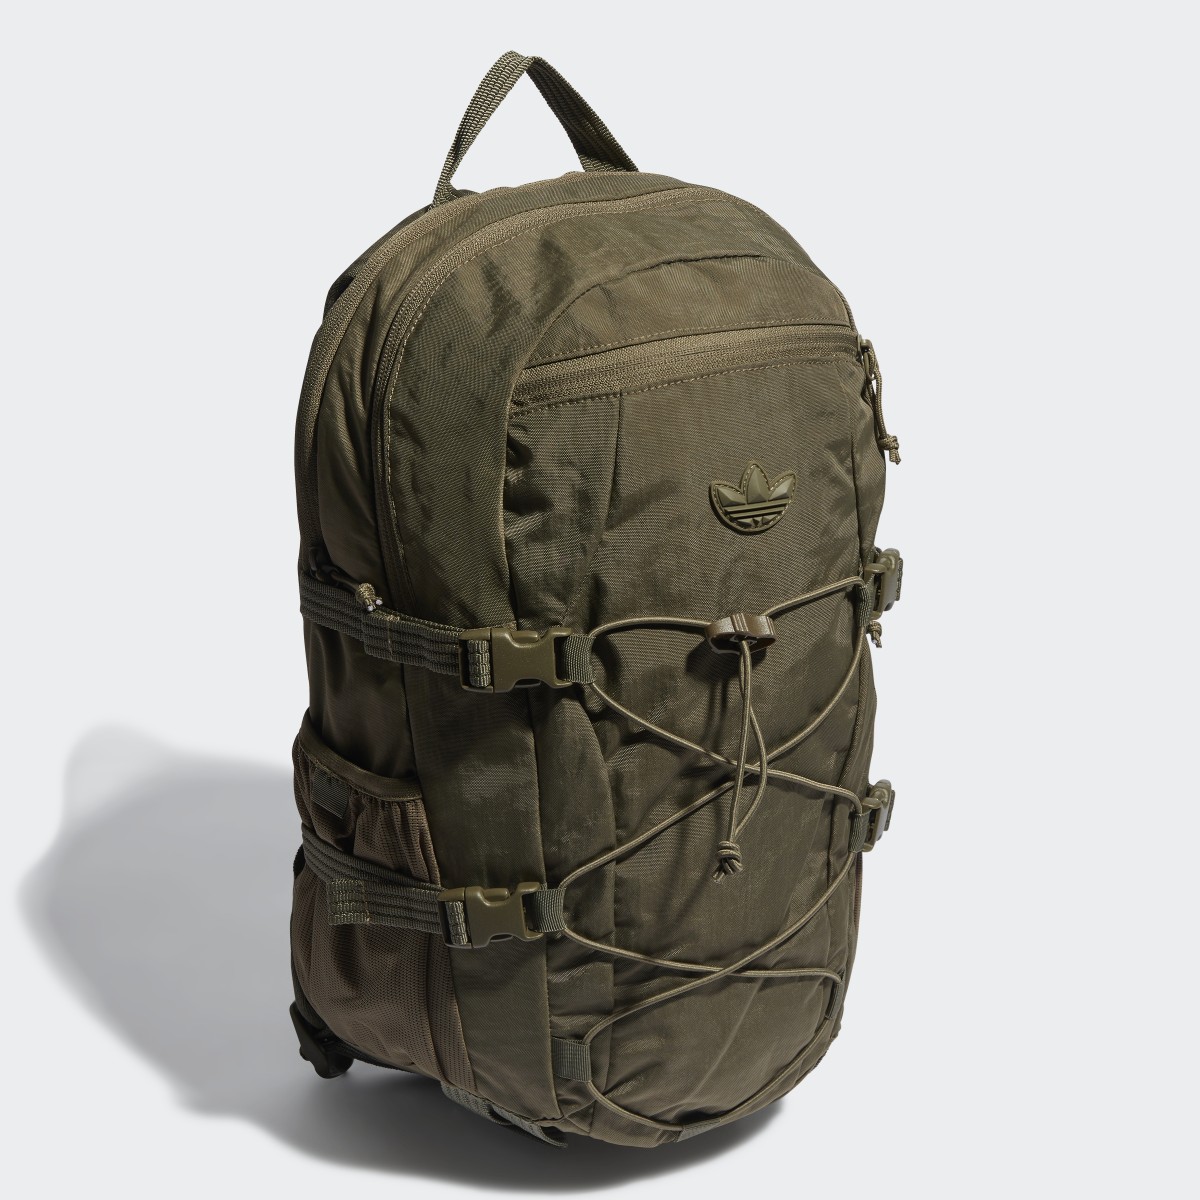 Adidas Adventure Backpack. 4